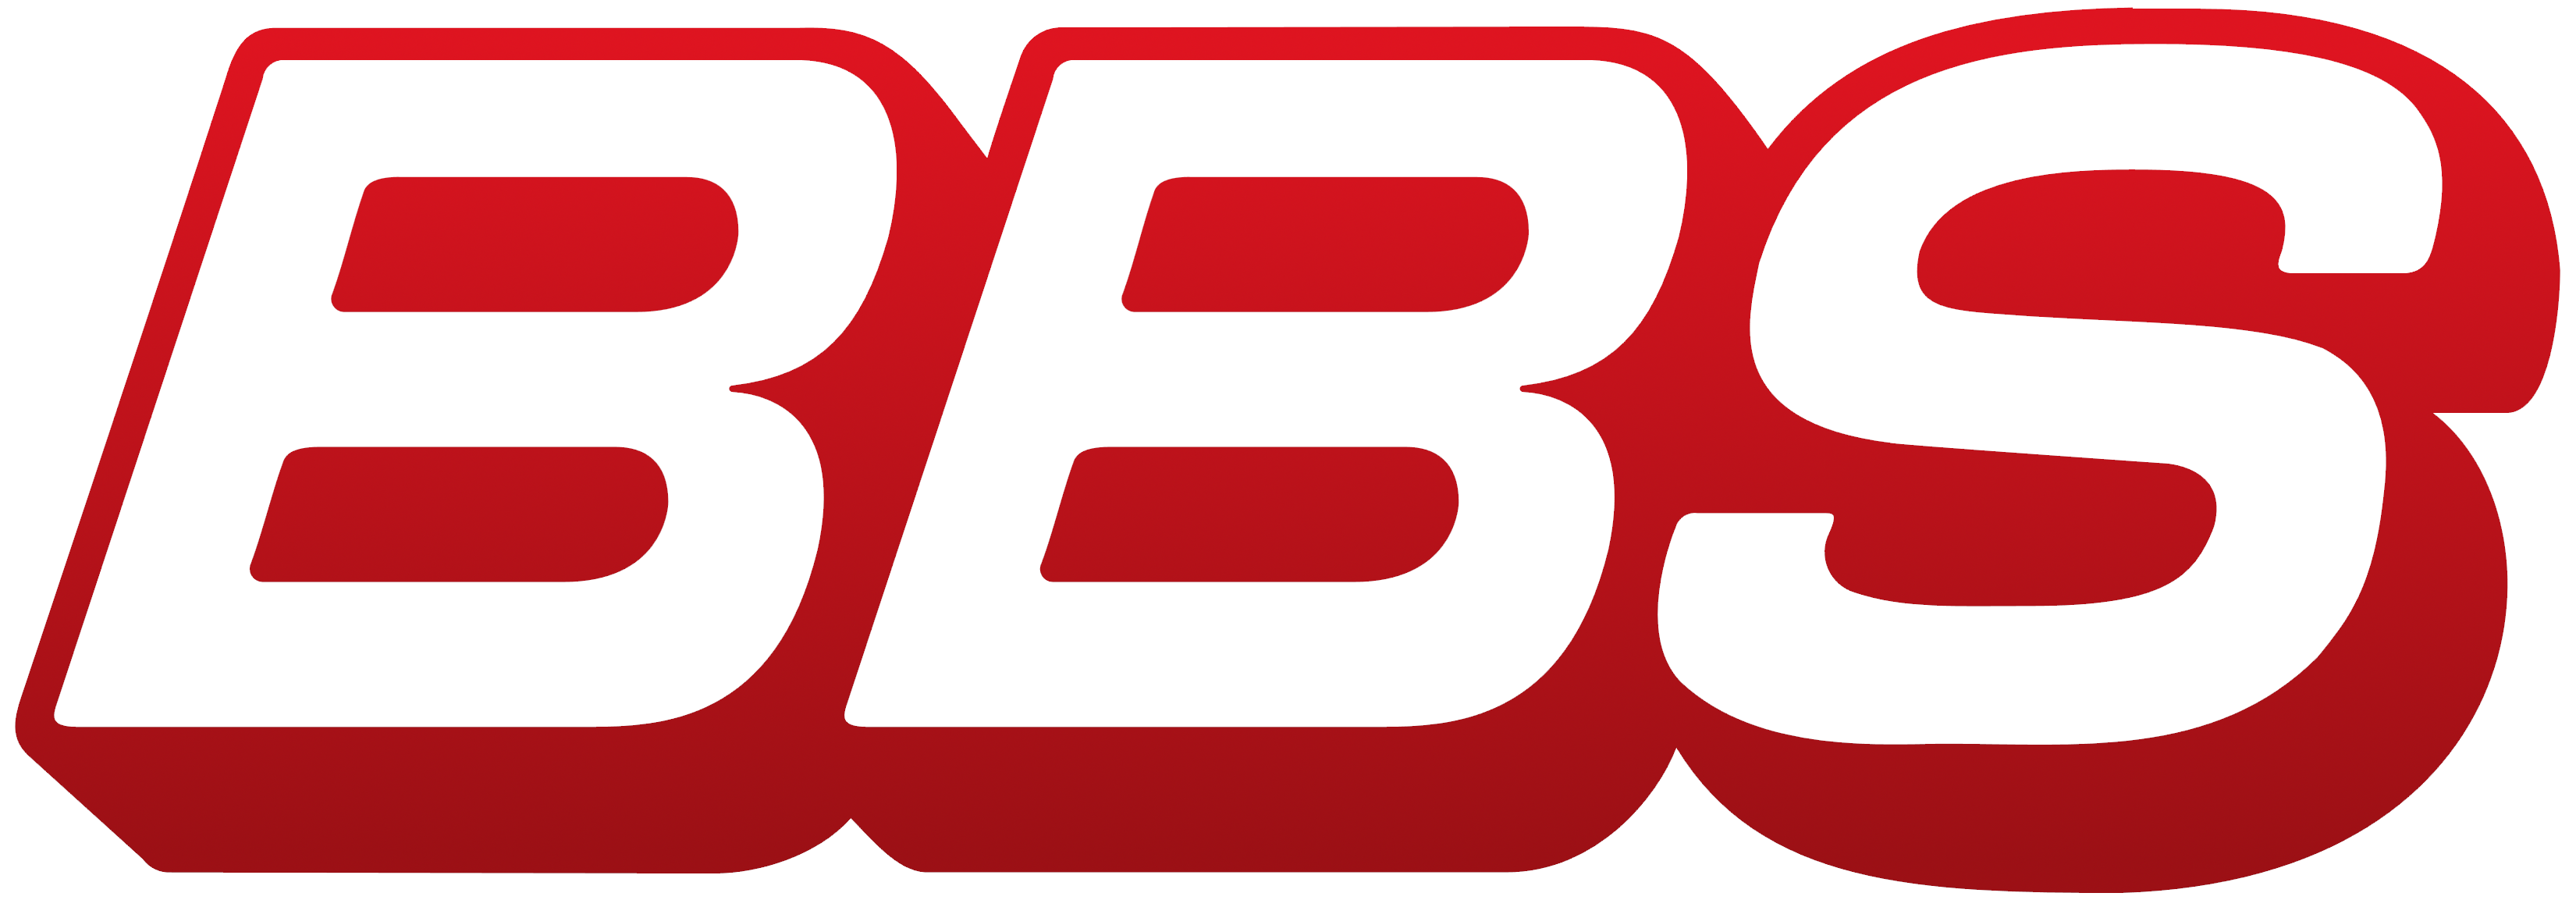 BBS logo – Logos Download